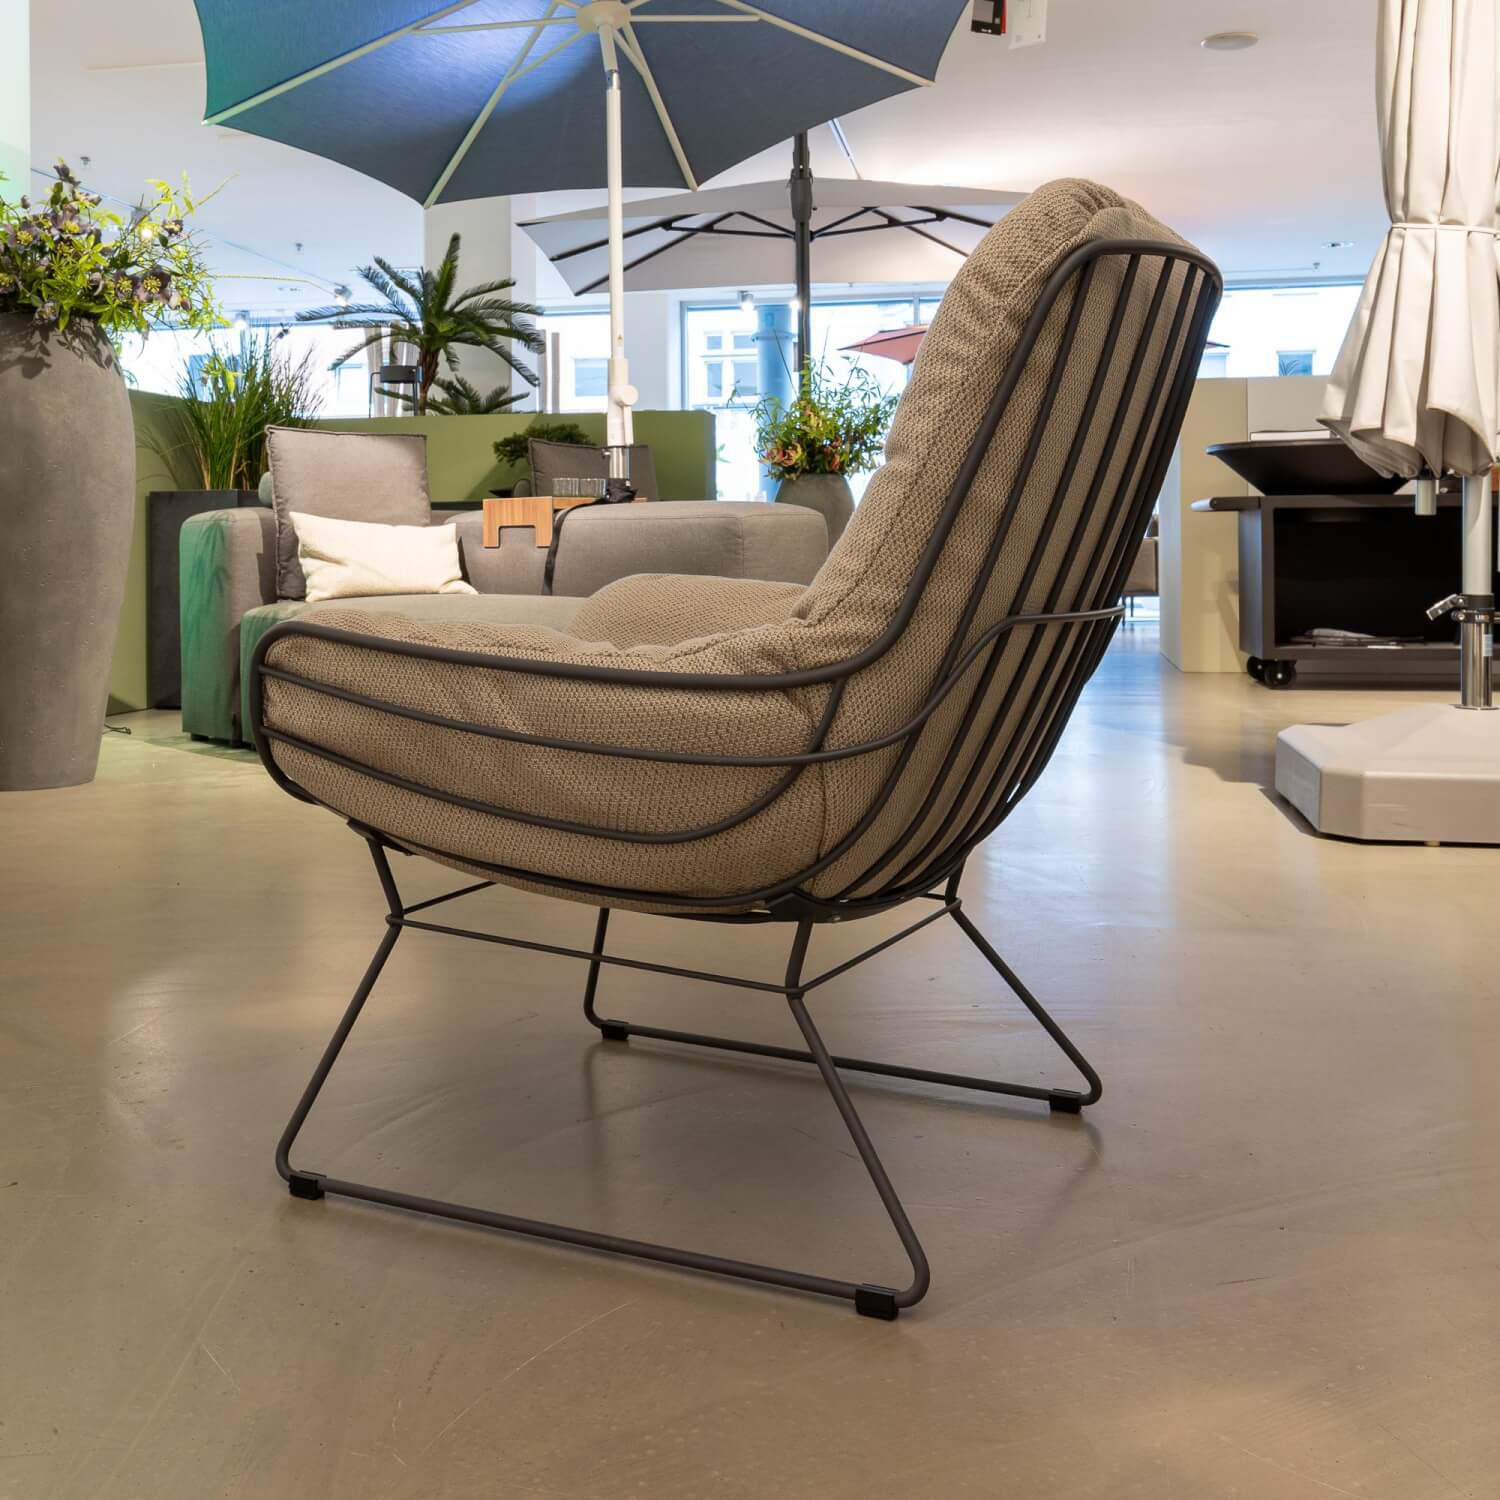 Lounge Chair Leyasol Outdoor Bezug Stoff Lopi Sand Grau Beige Gestell Schiefergrau